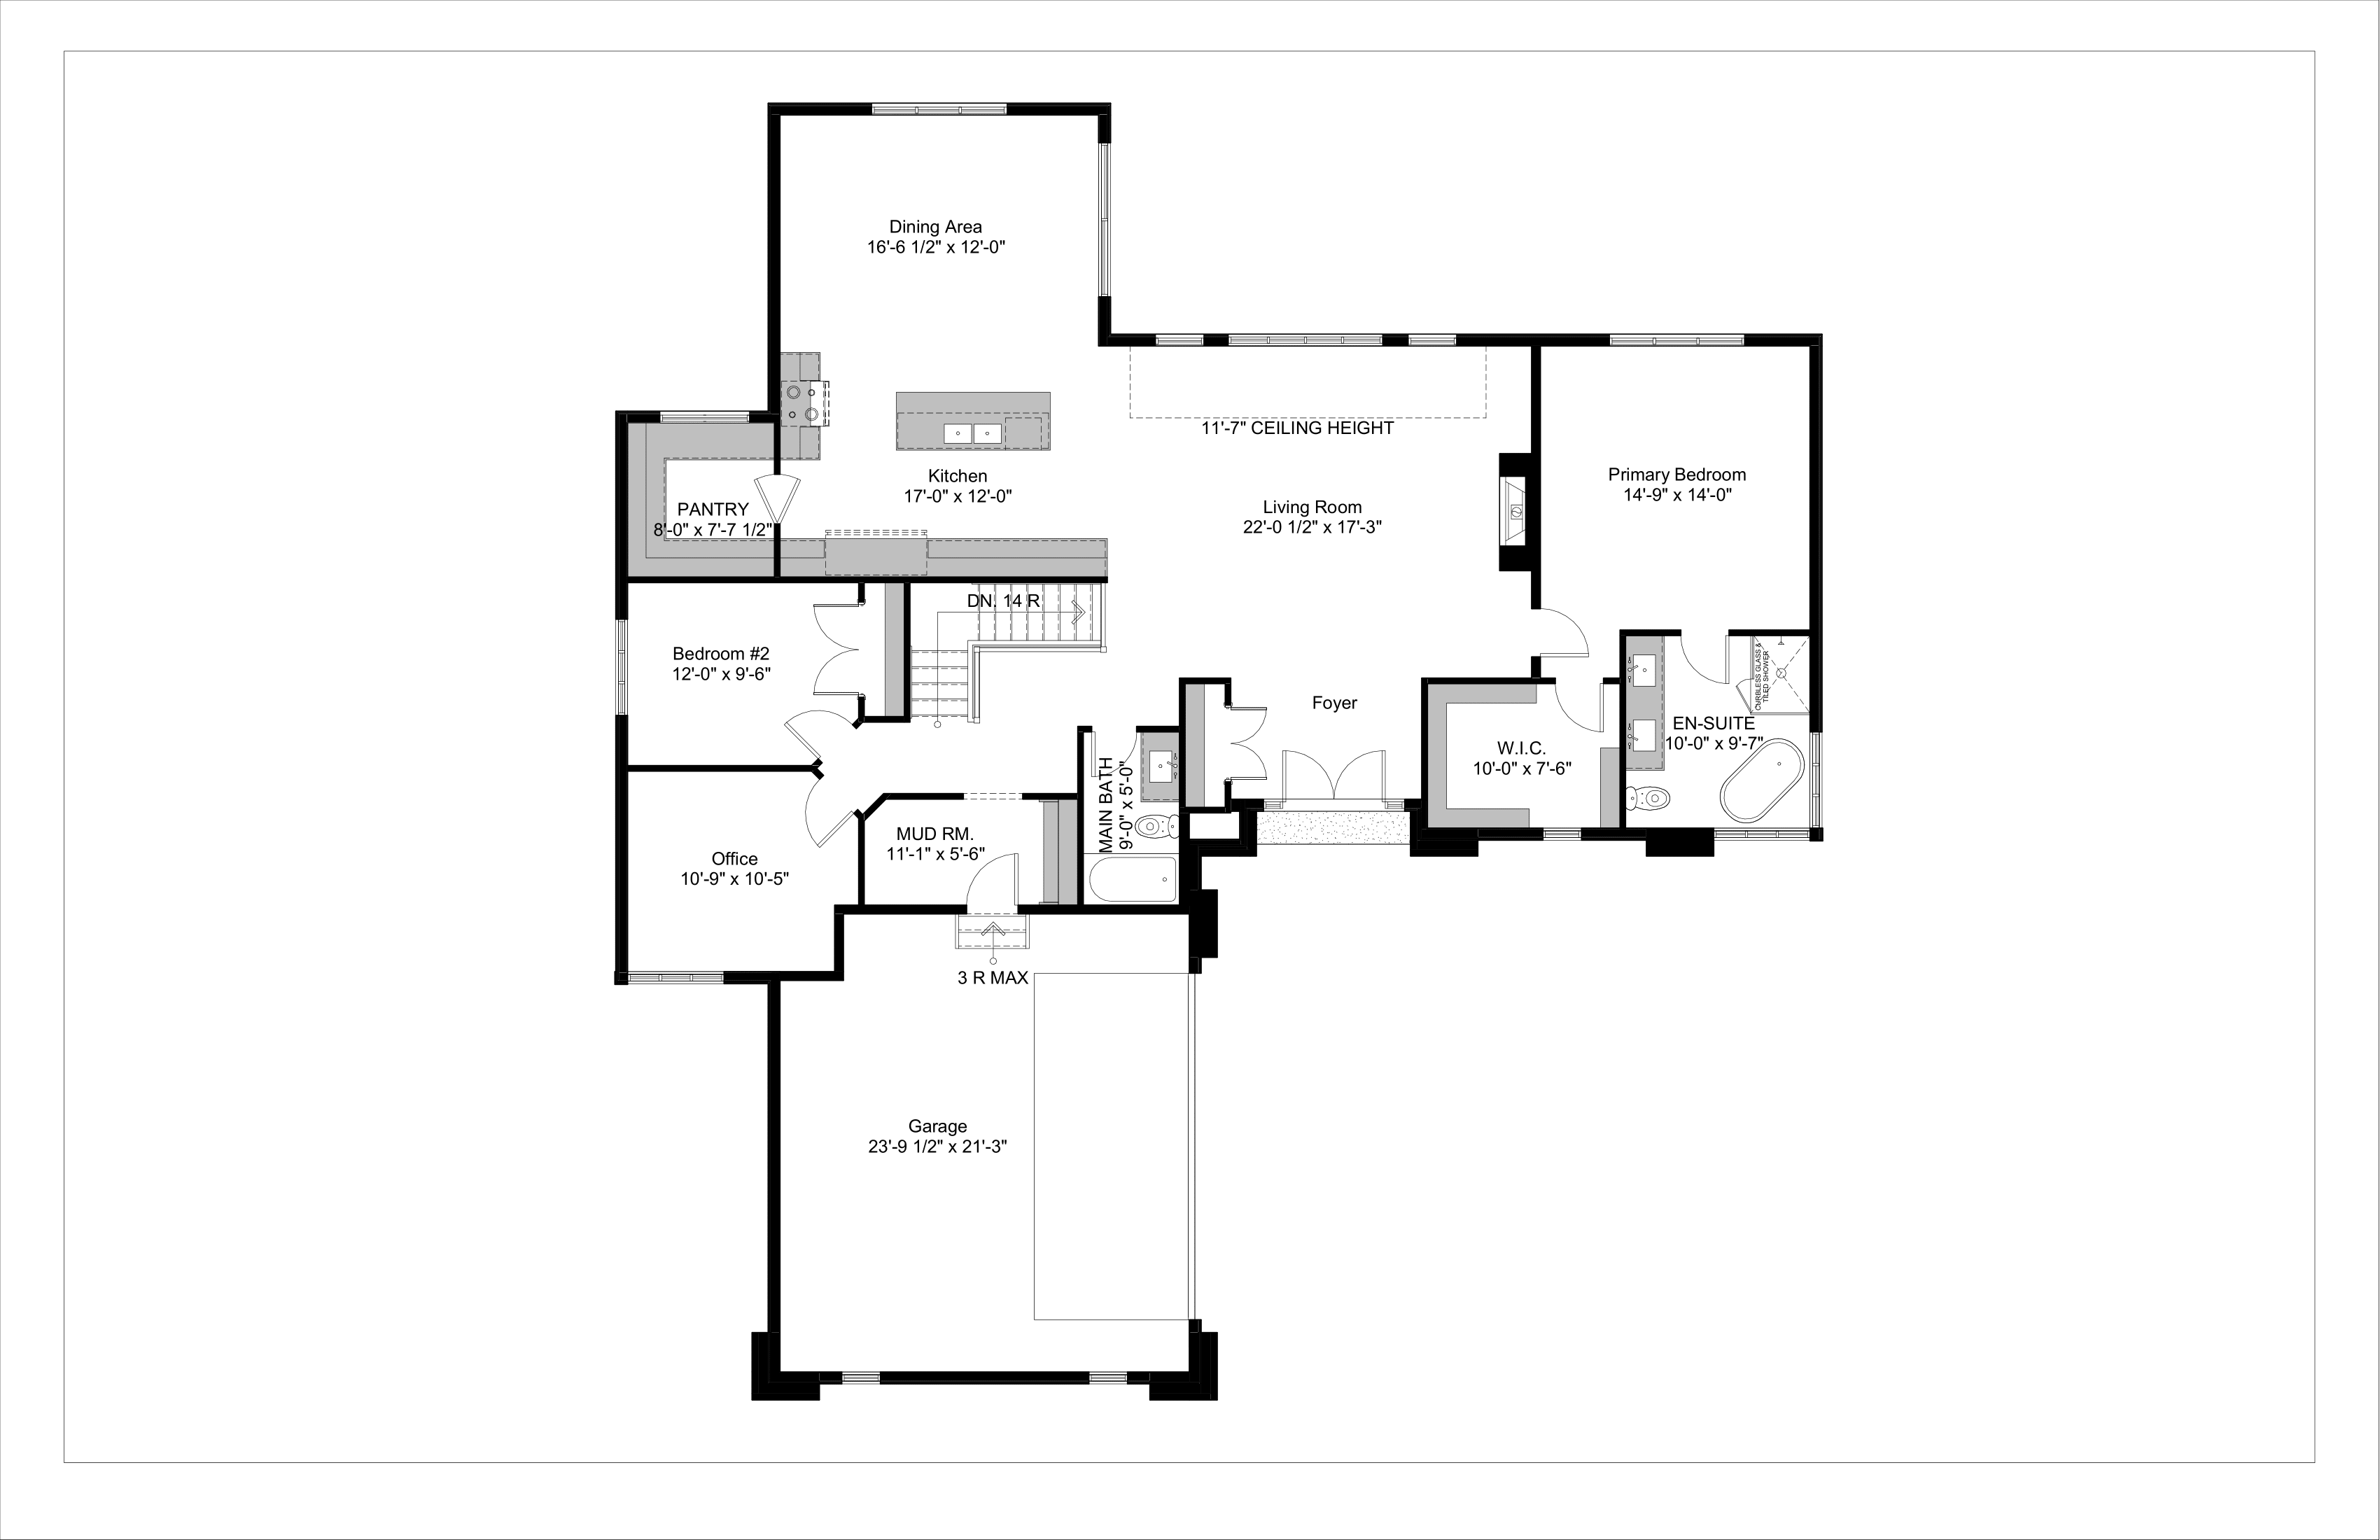 lot 7 floor plan-1